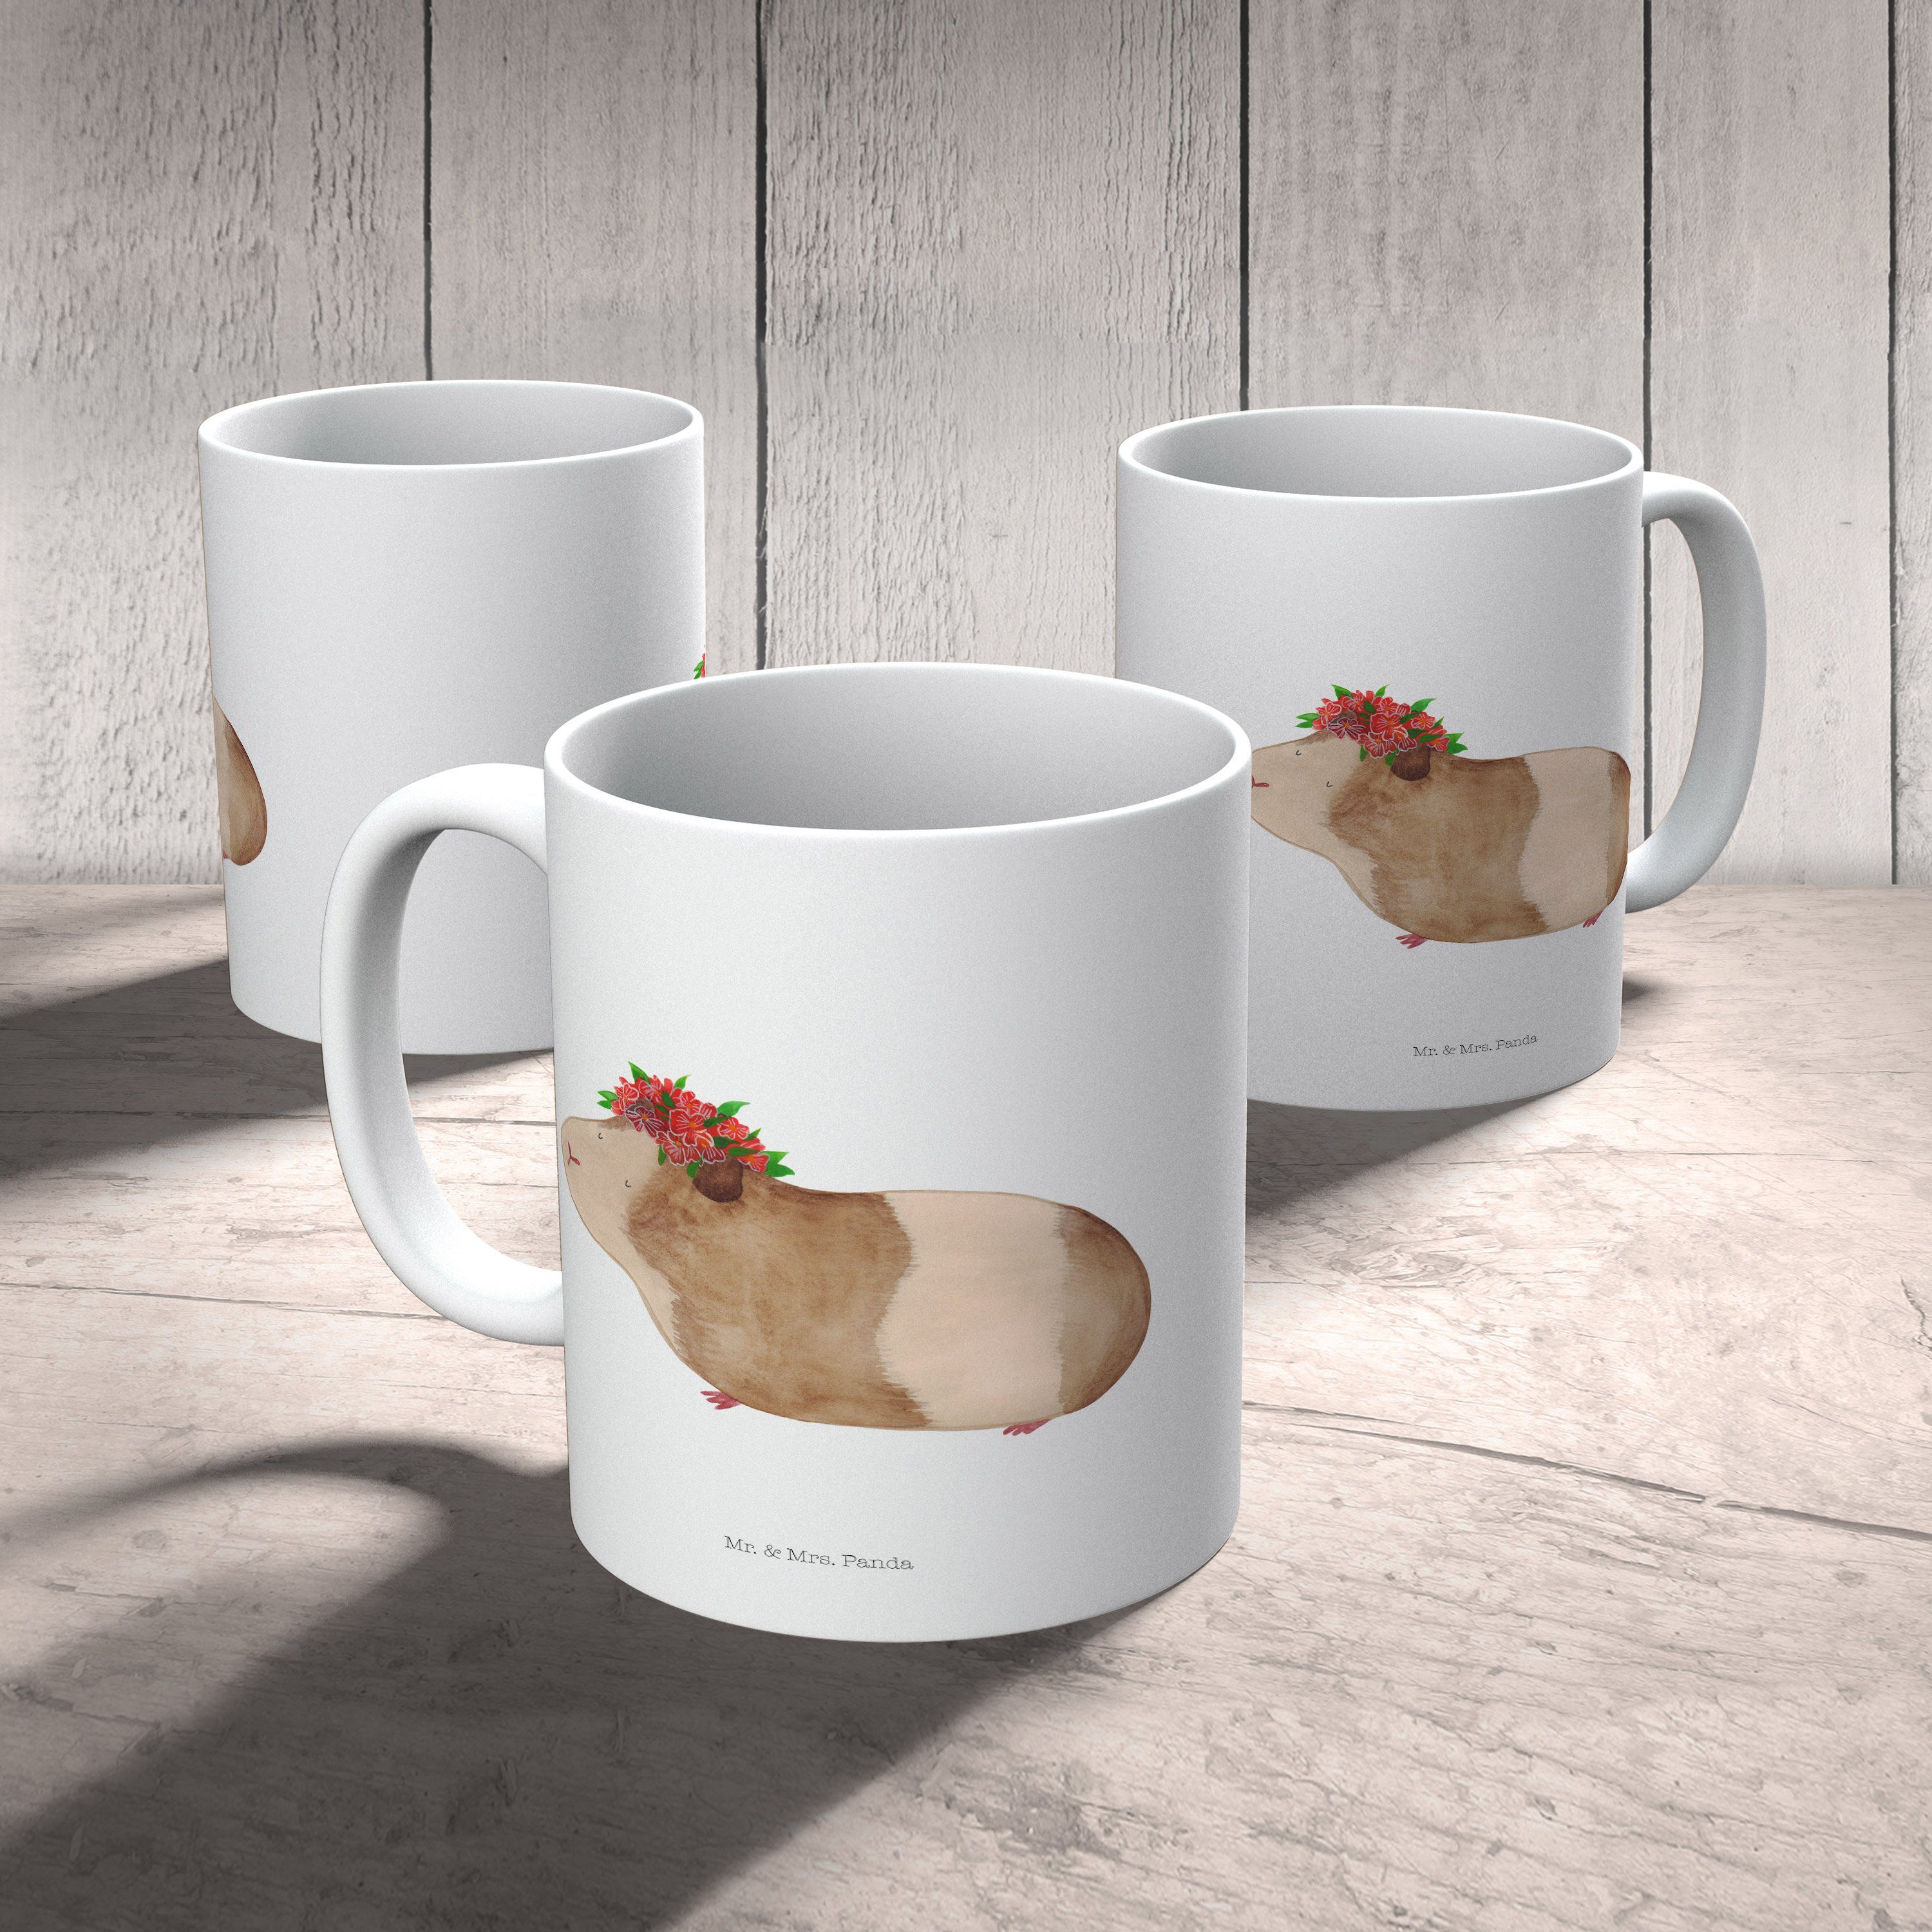 Mr. & Mrs. Panda Tas, Tasse Geschenk, - weise Keramiktasse, Meerschweinchen Keramik - Weiß Teebecher